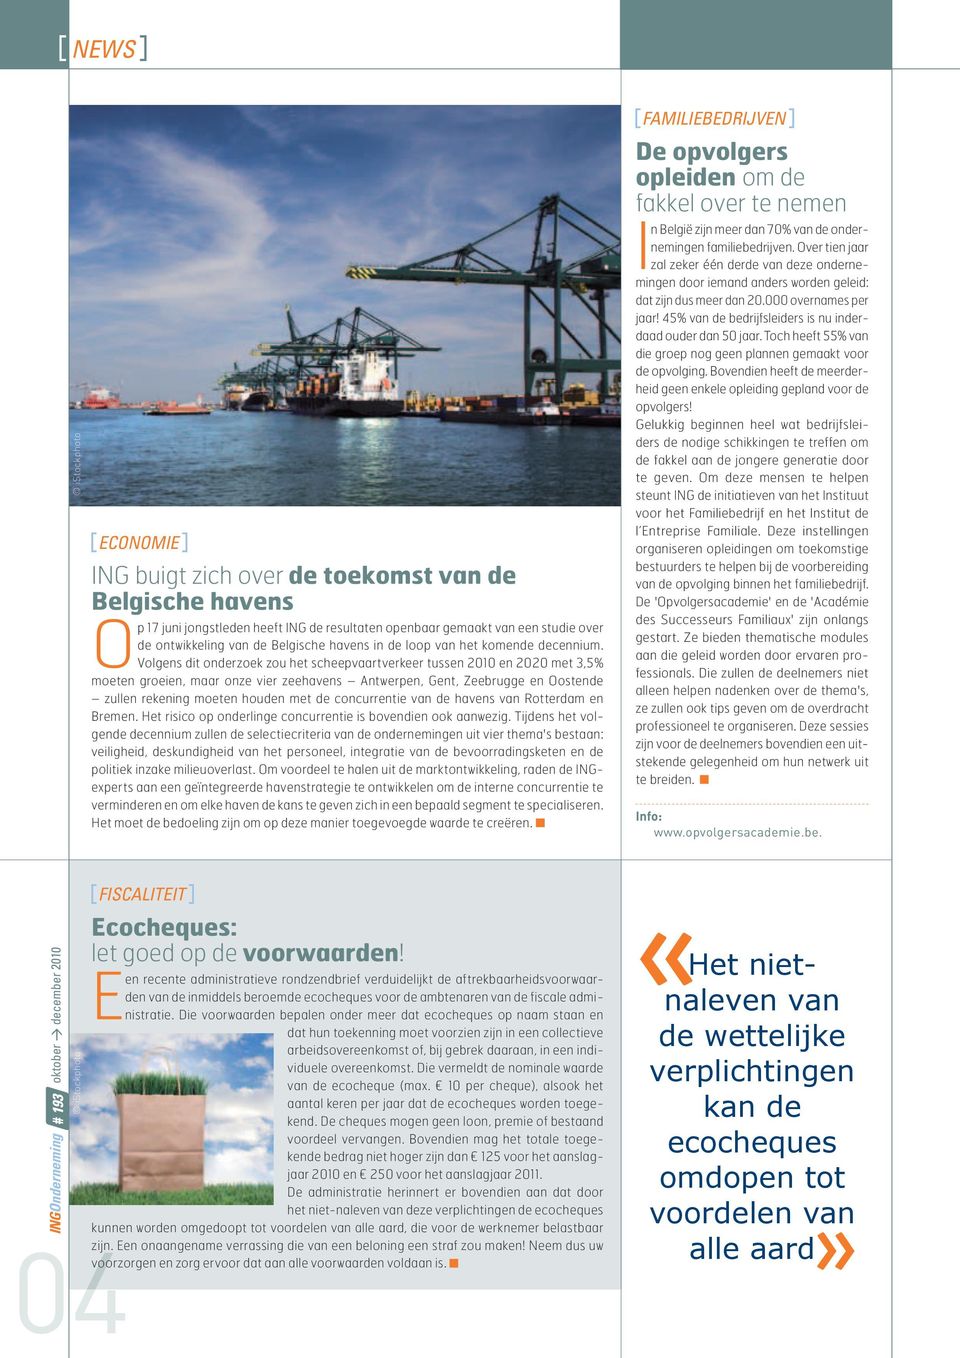 Volgens dit onderzoek zou het scheepvaartverkeer tussen 2010 en 2020 met 3,5% moeten groeien, maar onze vier zeehavens Antwerpen, Gent, Zeebrugge en Oostende zullen rekening moeten houden met de